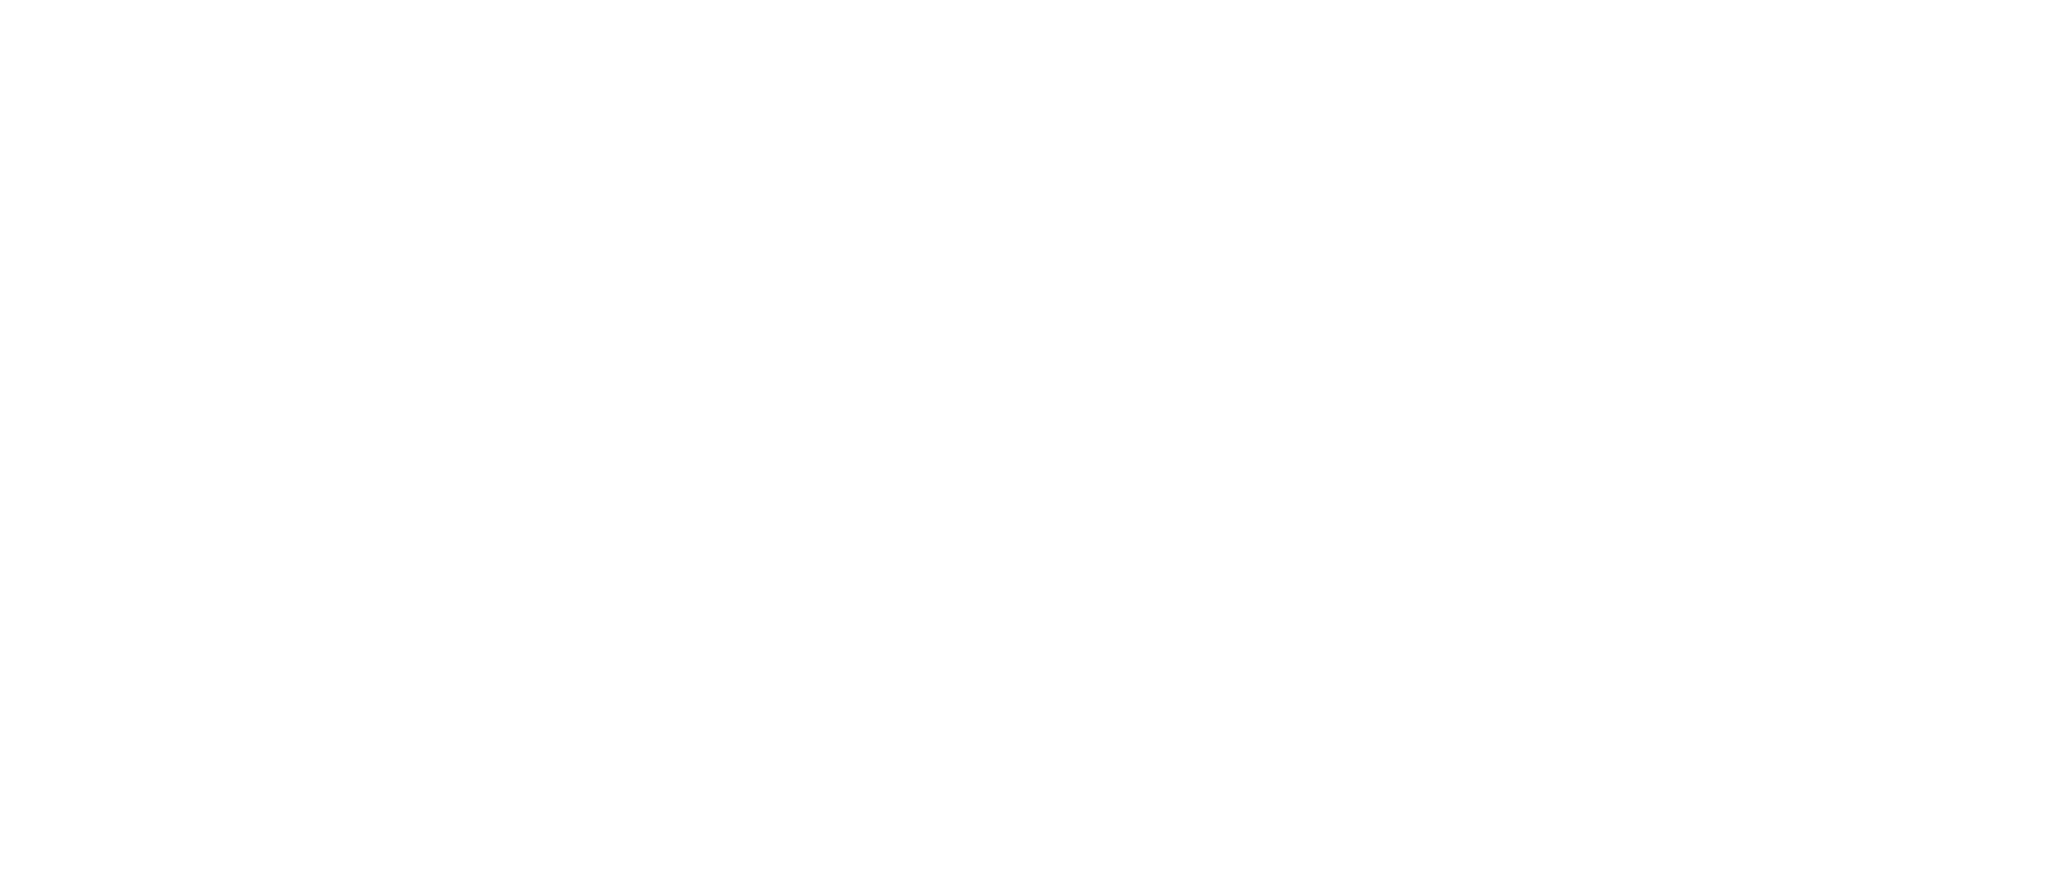 NajimaMizuki -オンライン物販-